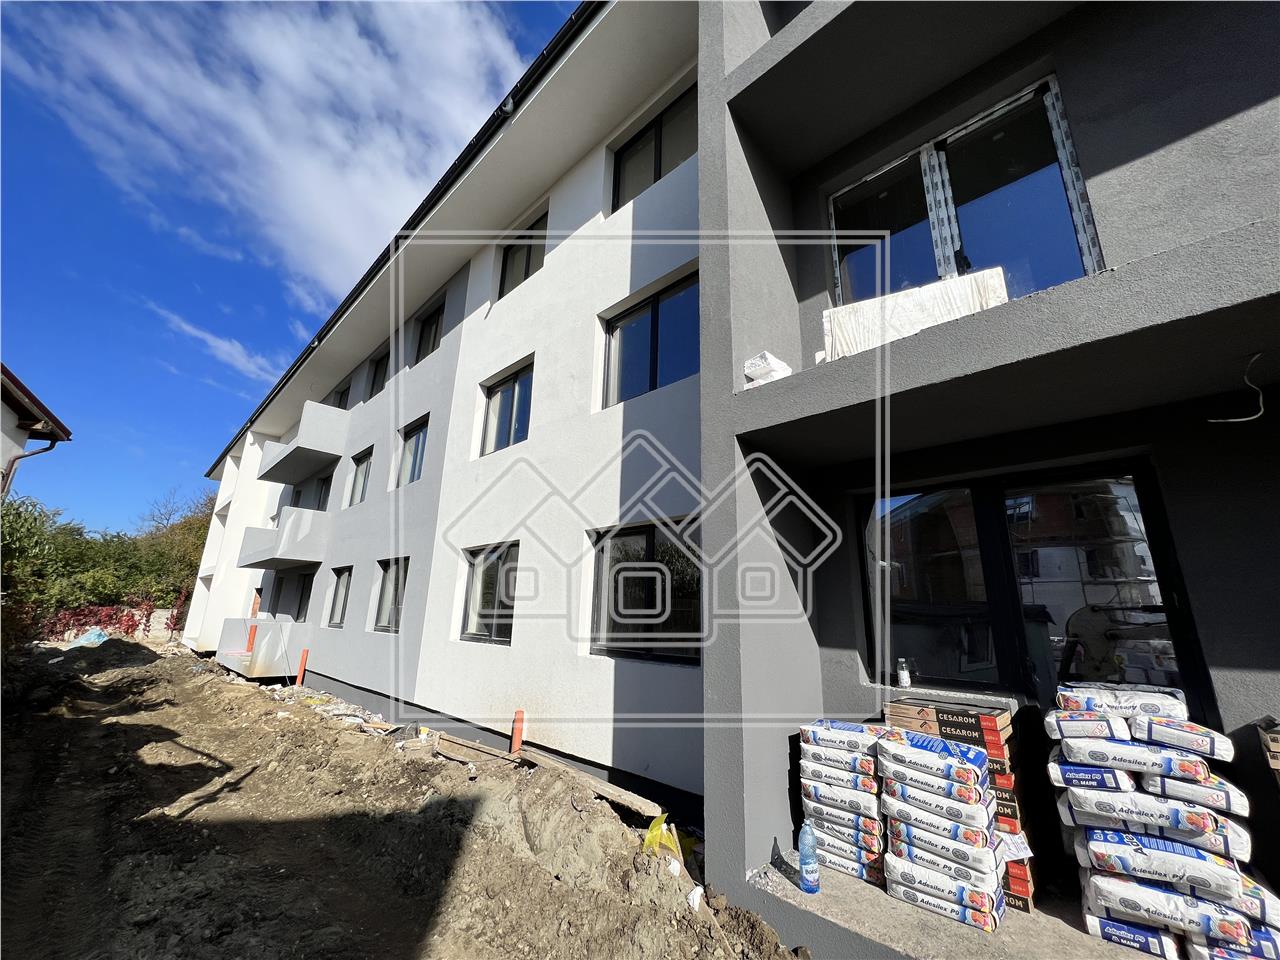 Apartament de vanzare in Sibiu - Selimbar - decomandat, ansamblu nou